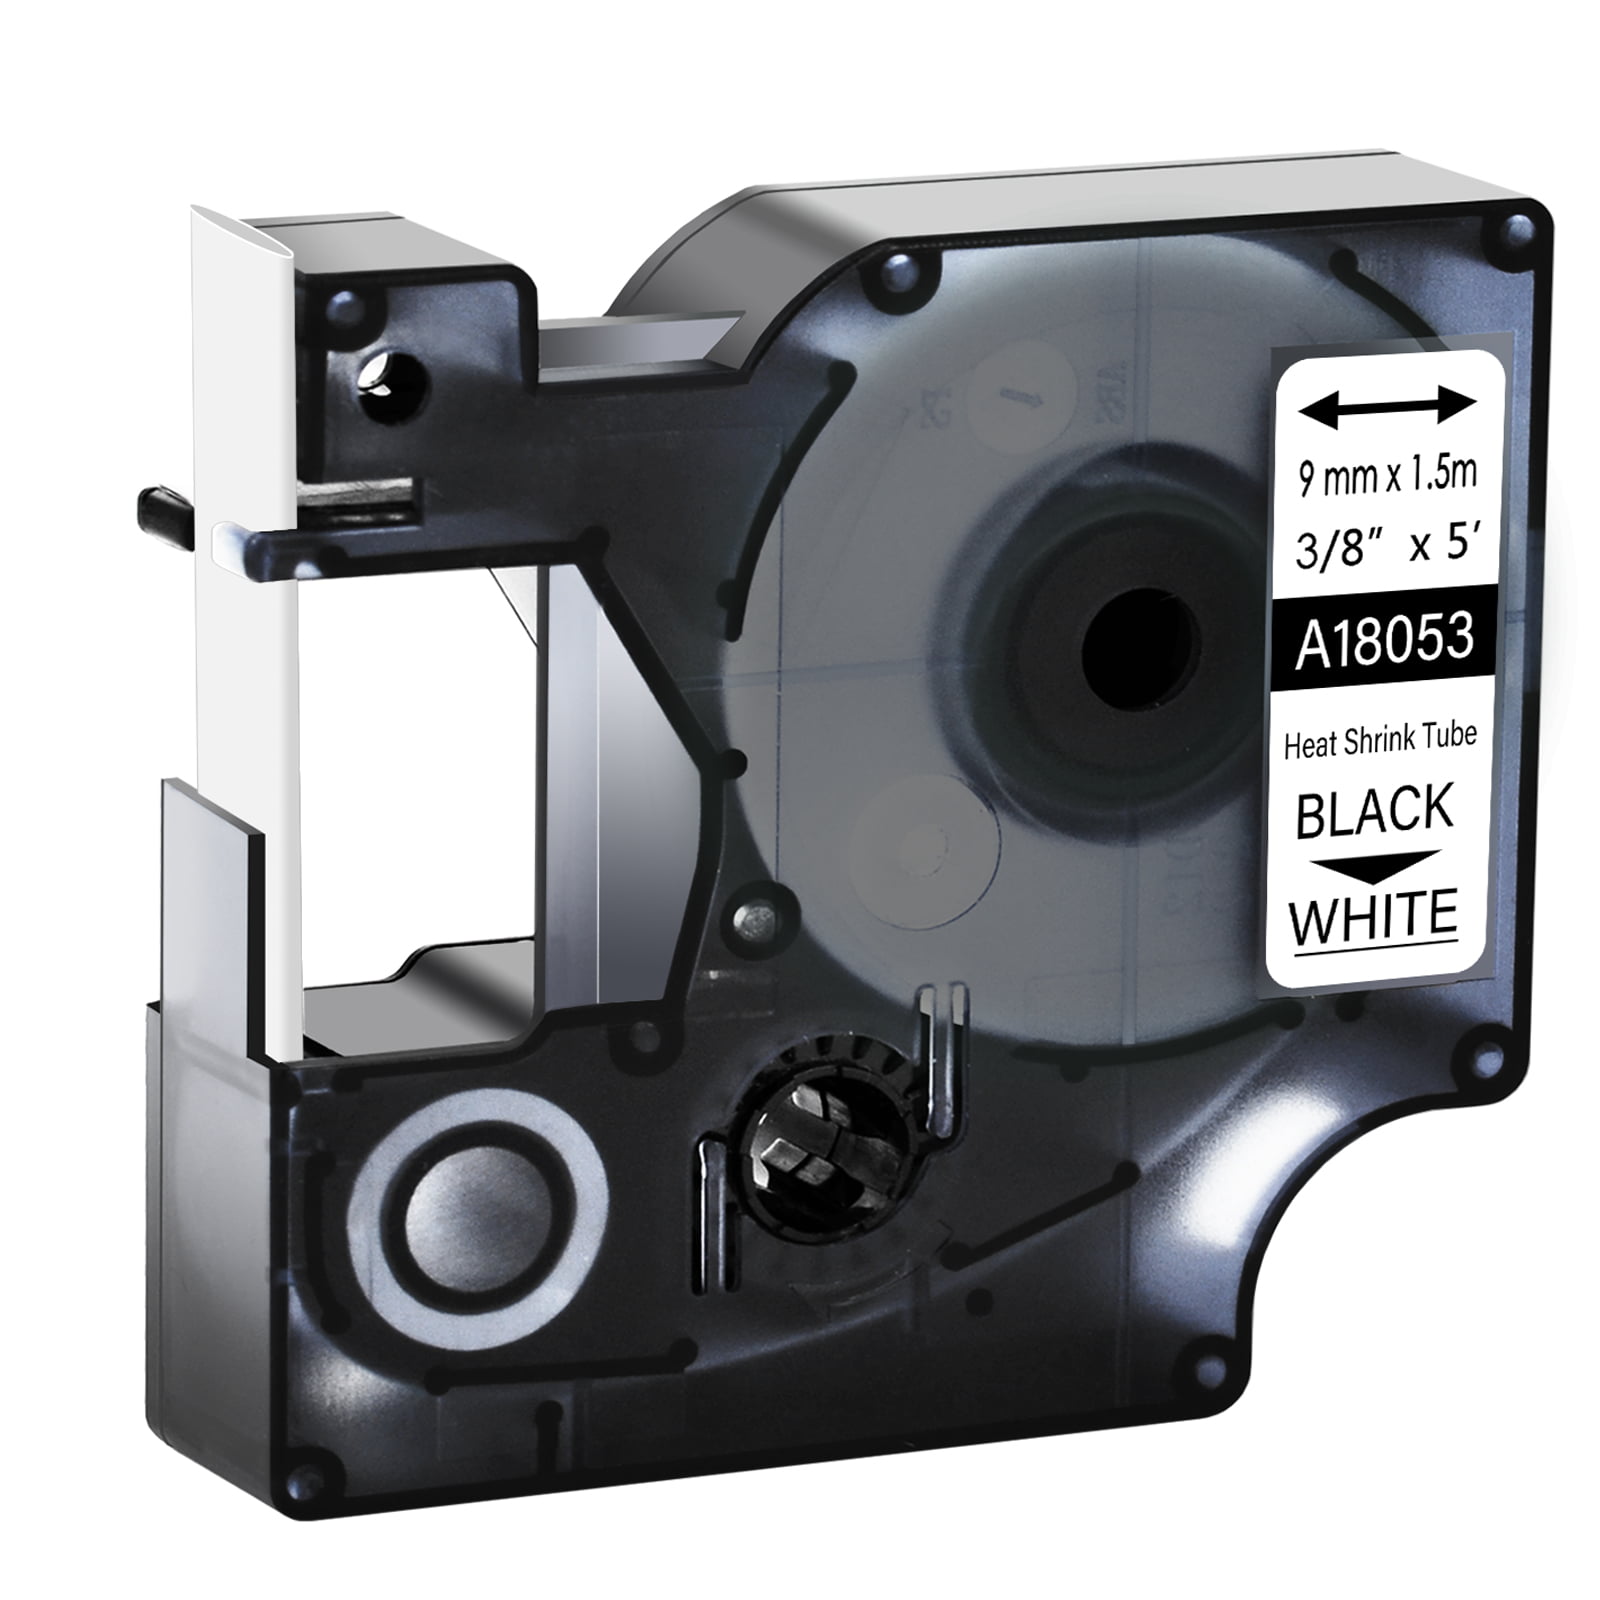 4PK Black on White 18053 for DYMO Rhino 1000 Heat Shrink Tube Label Tape 9mm 